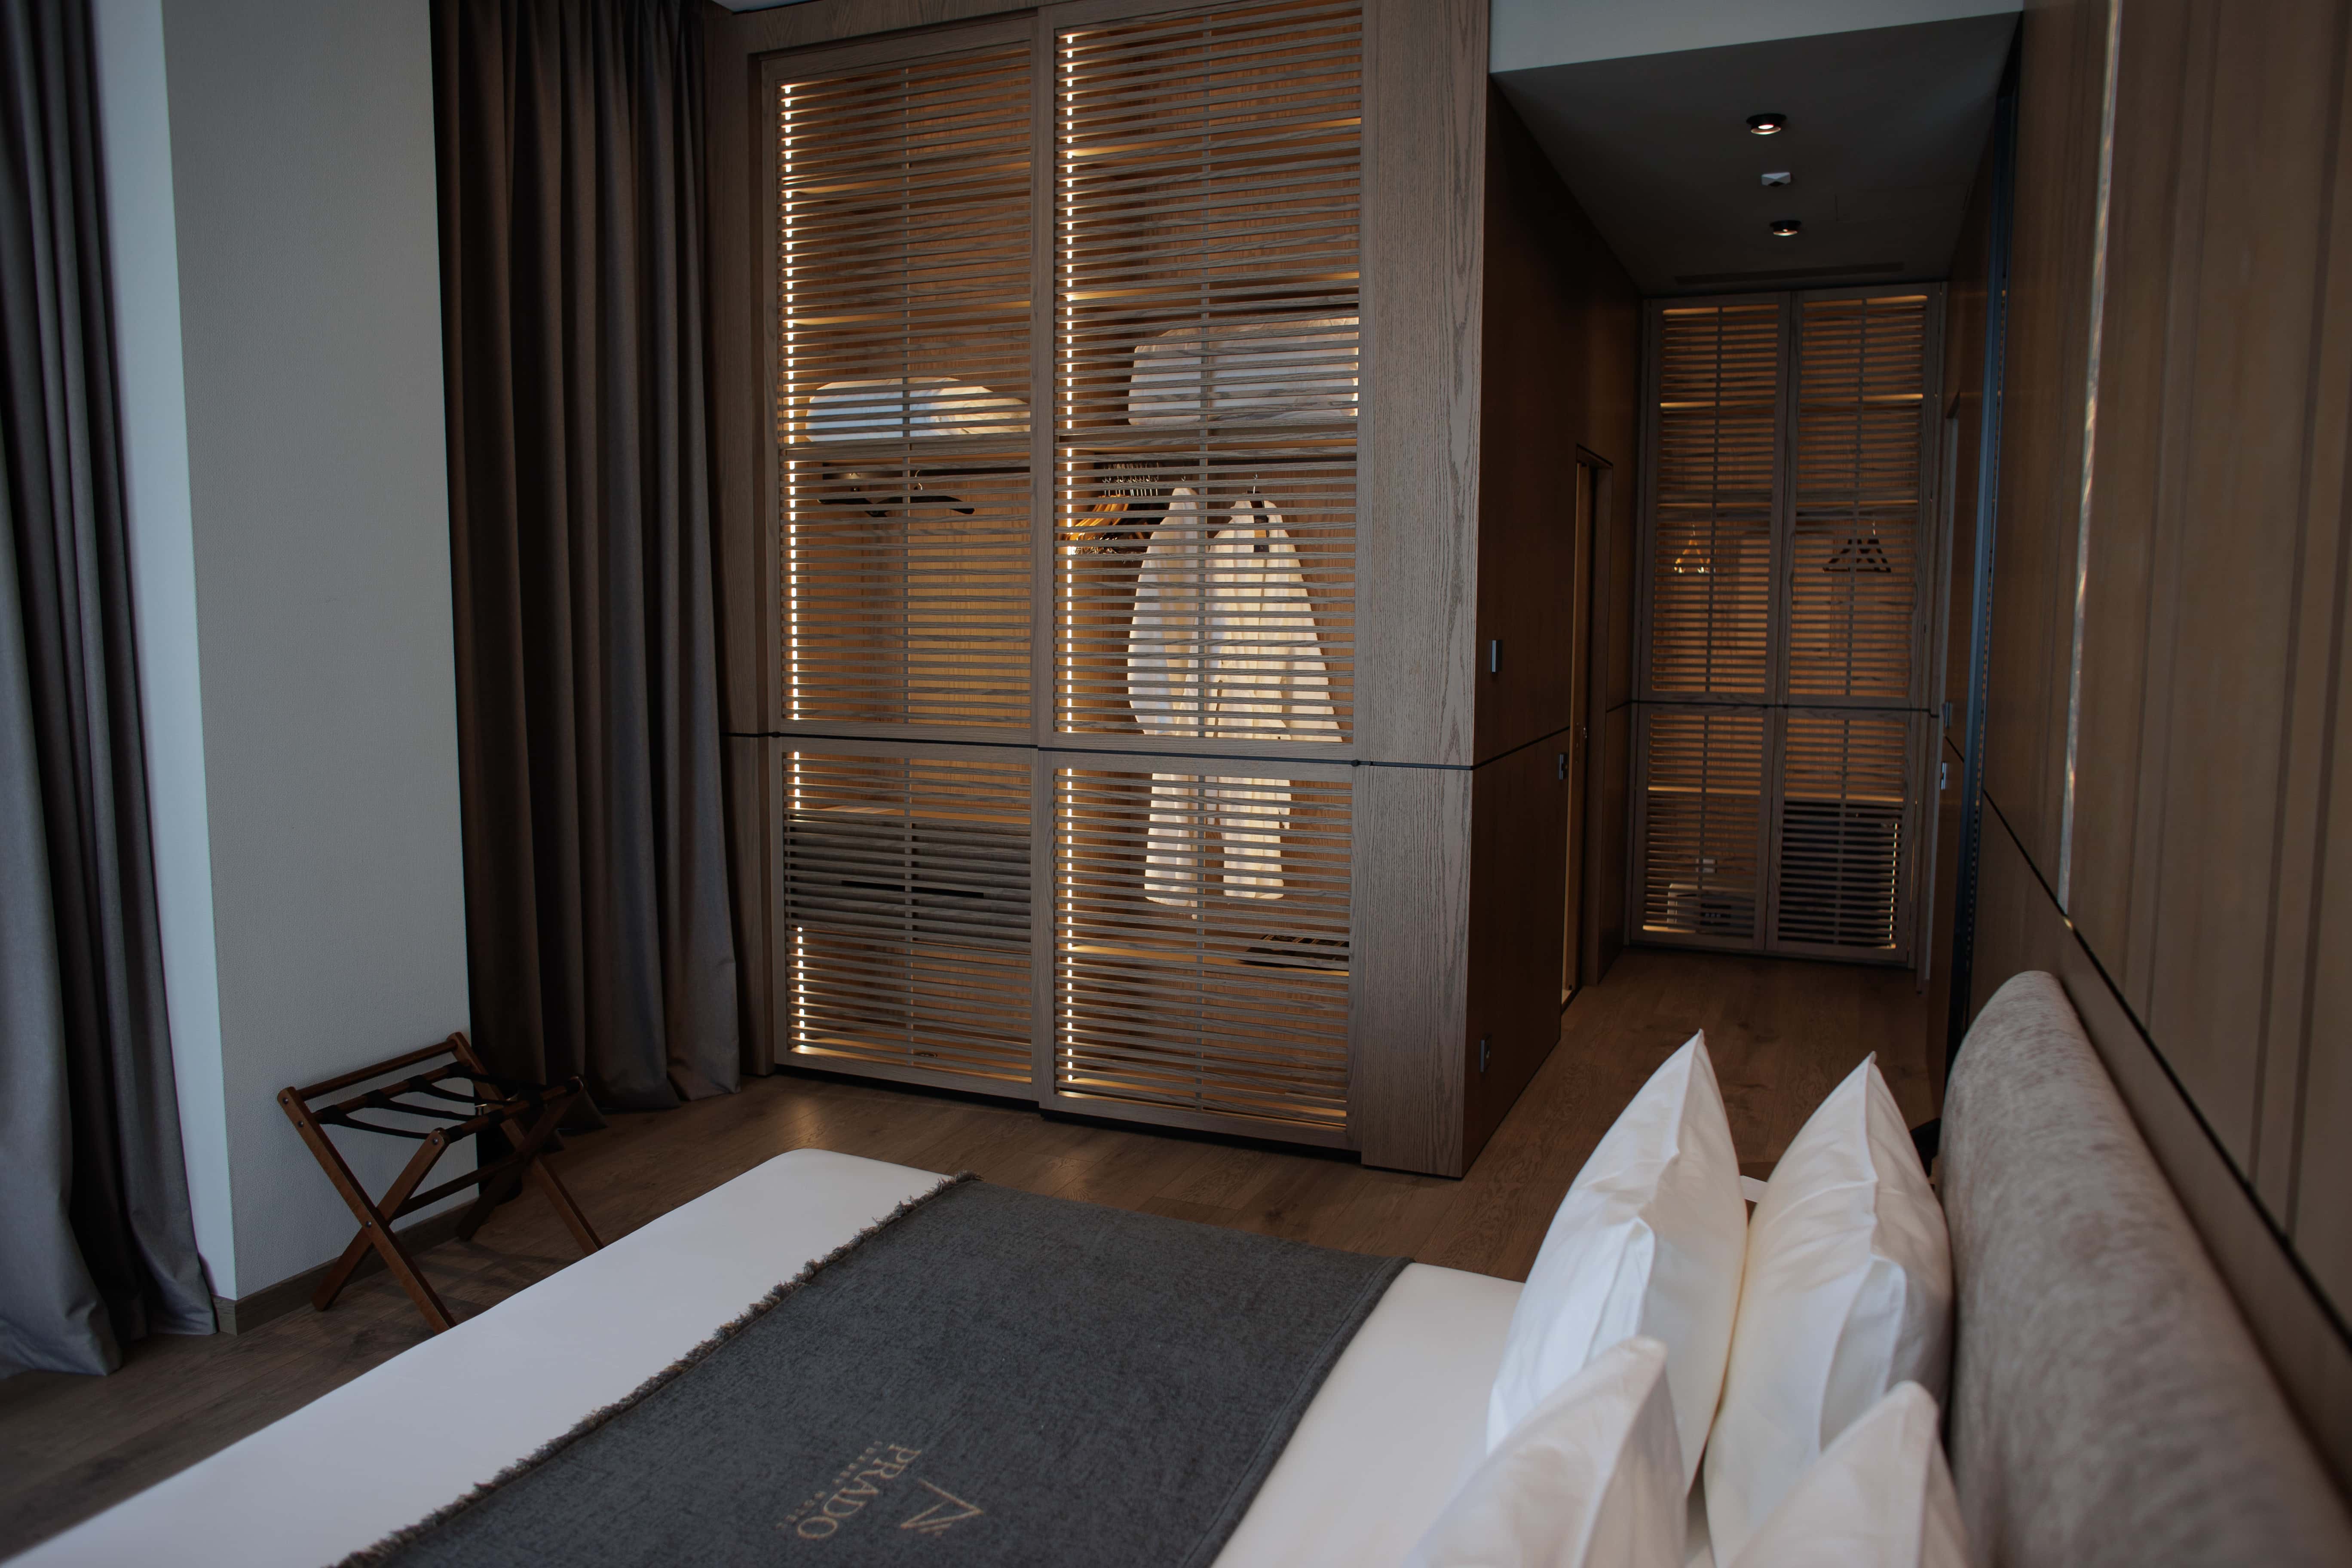 prado_luxury_hotel_room_junior_suite_seaview_jacuzzi_beds_closet